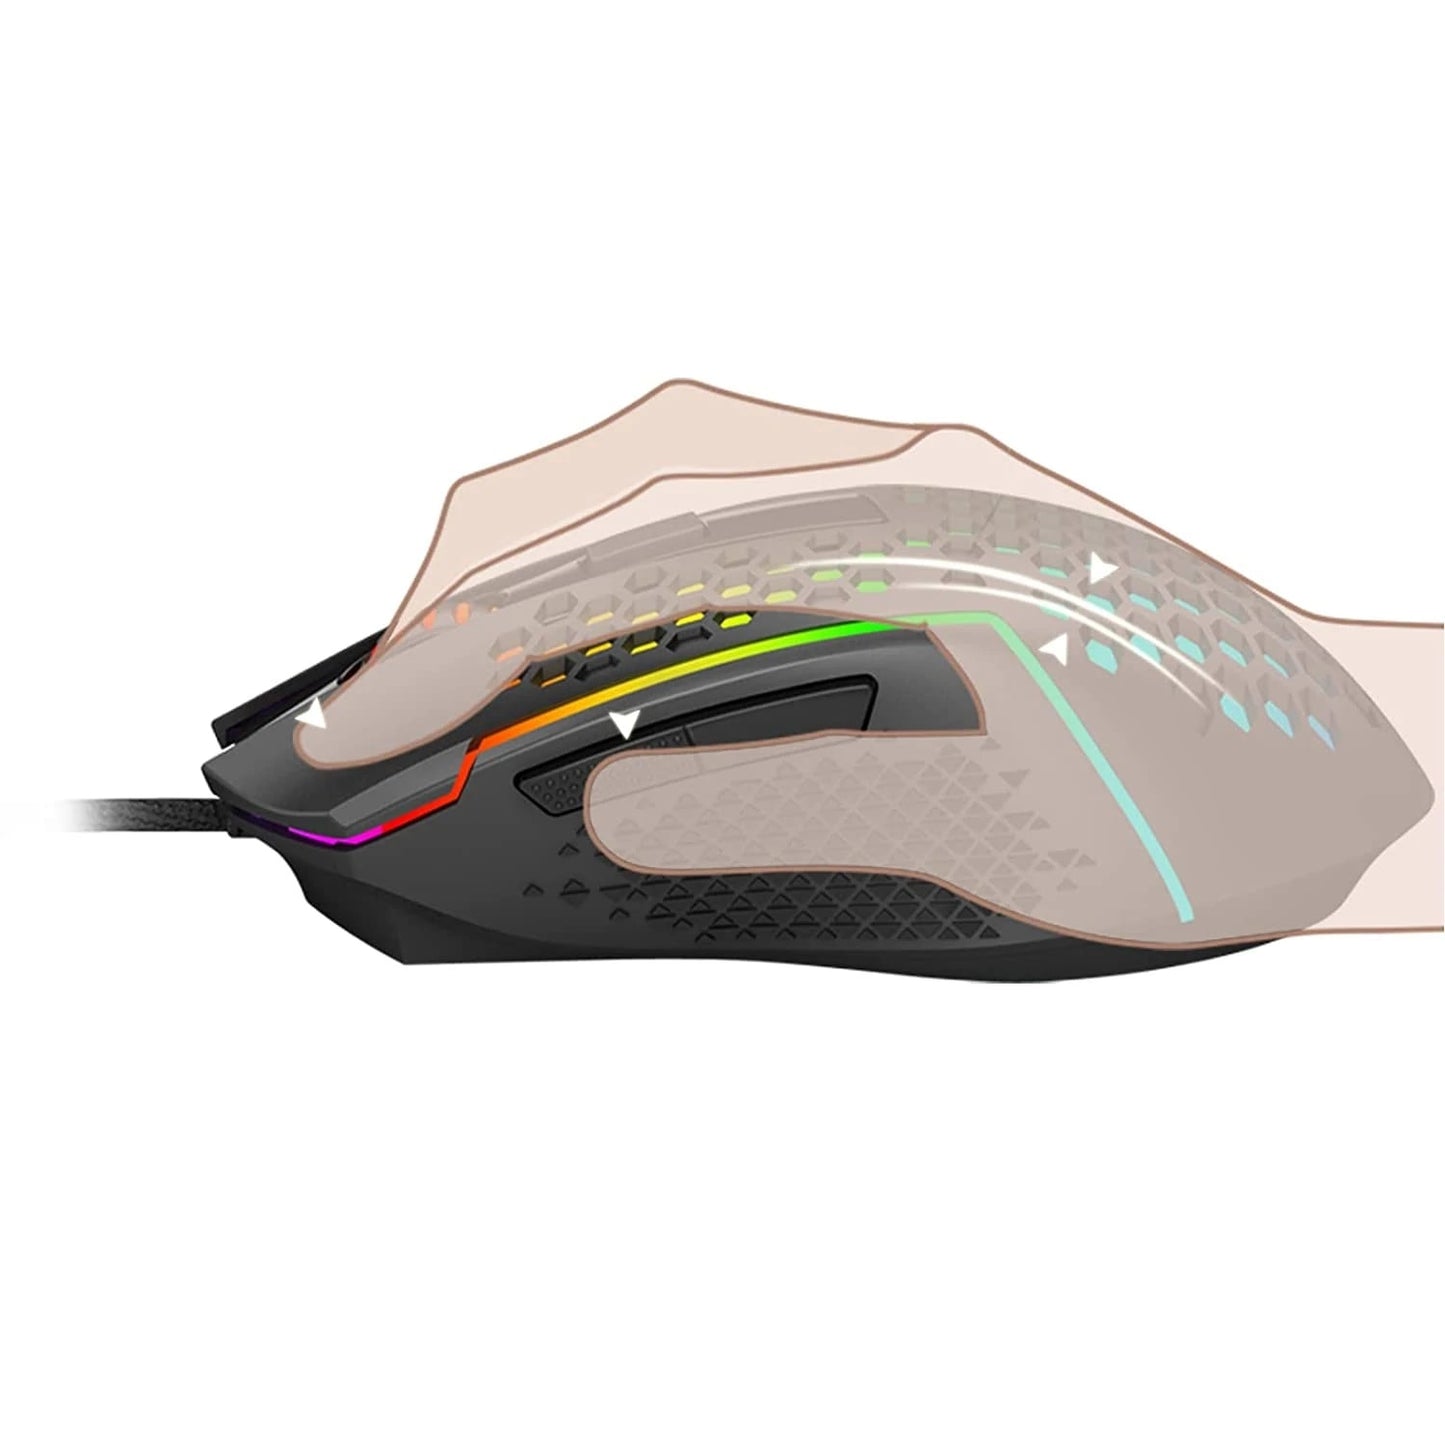 Redragon M987P-K REAPING ELITE Lightweight Gaming Mouse 55Grams, 32,000 DPI (Black)